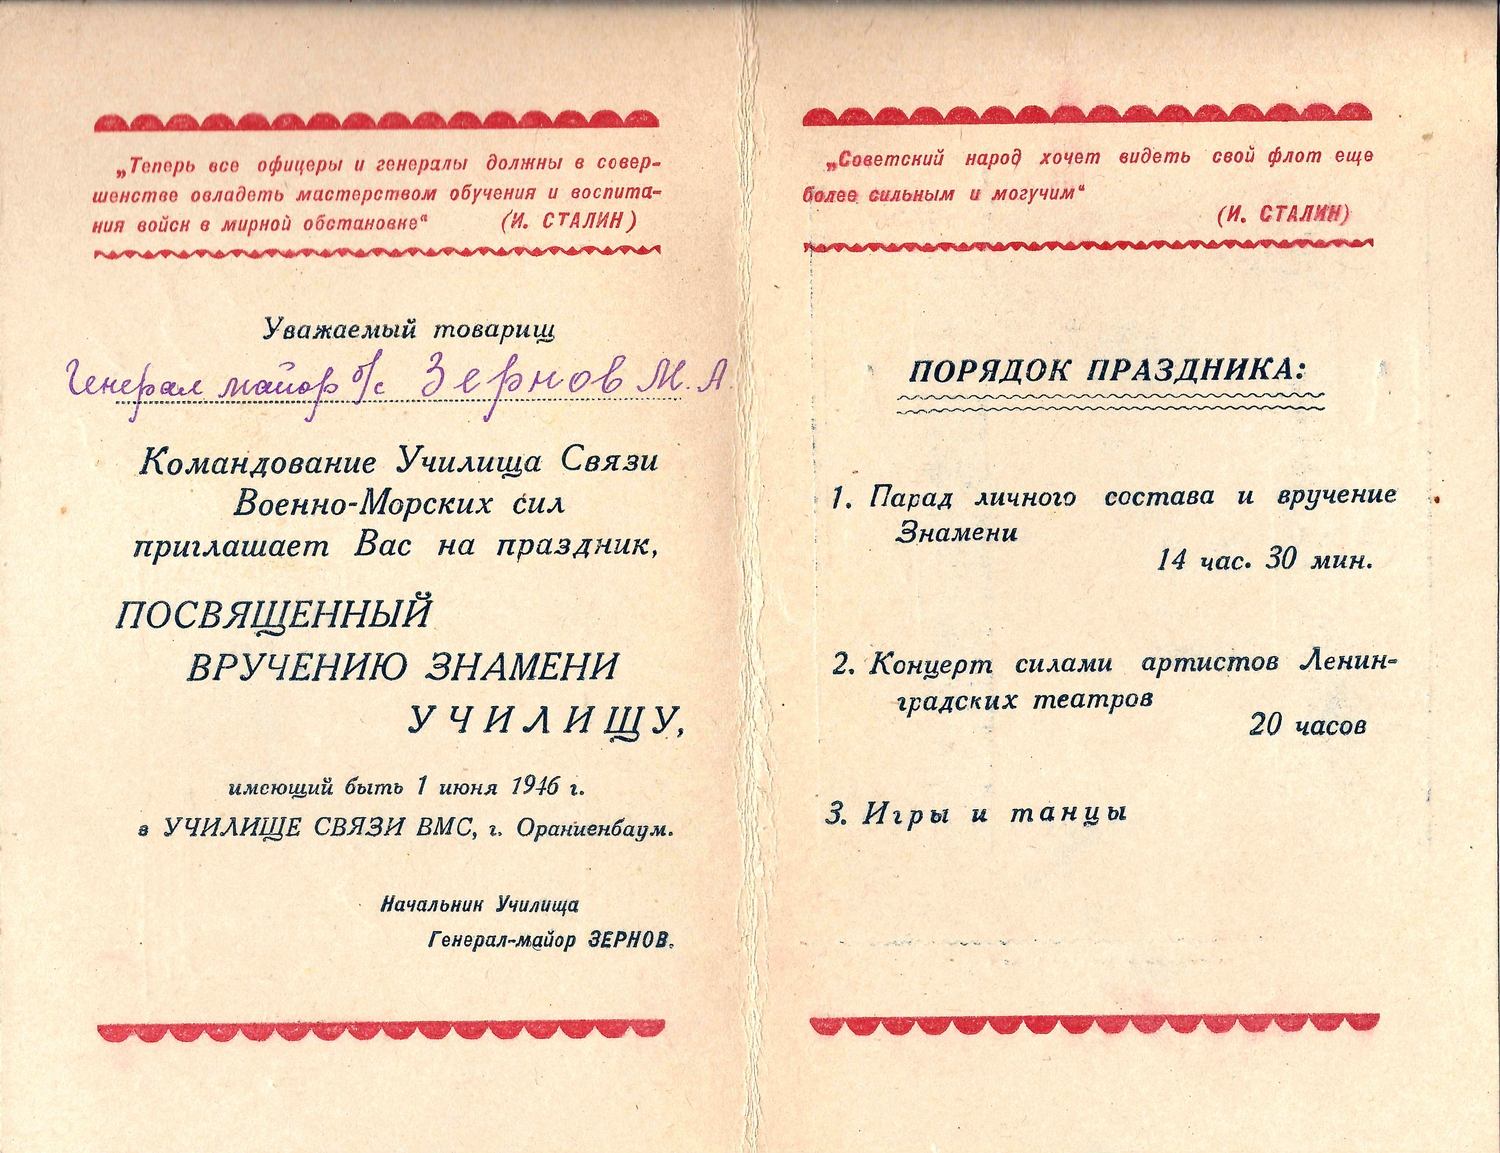 Пригласительный билет на праздник, посвящённый вручению знамени Училищу Связи Военно-Морских сил 1 июня 1946 года на имя М.А. Зернова.